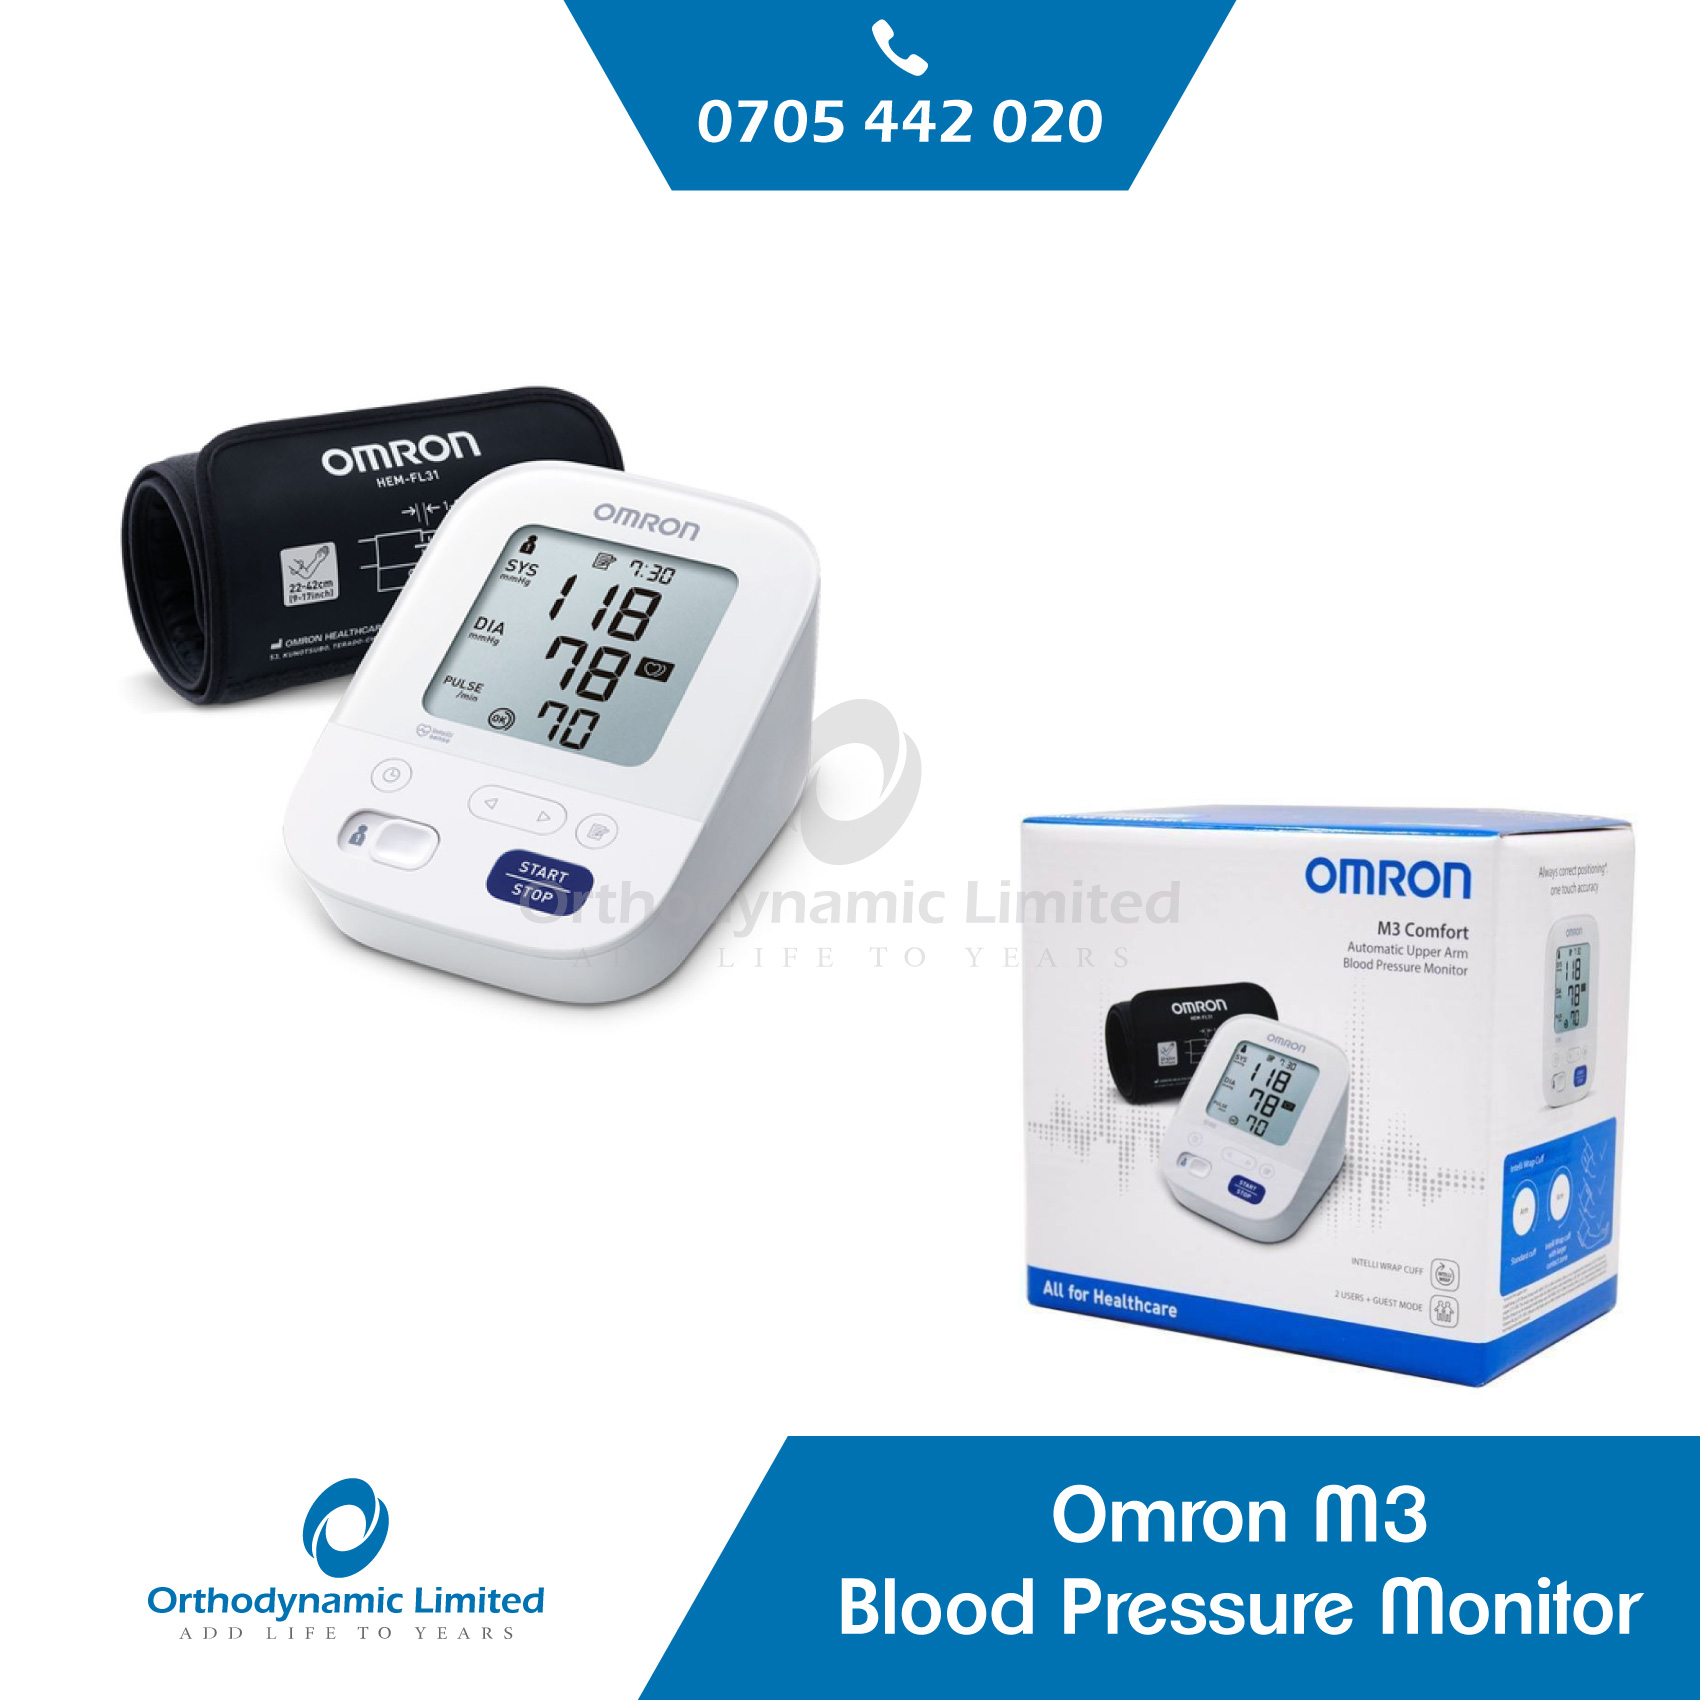 Omron M3 Blood Pressure Monitor - Orthodynamic Ltd - Call